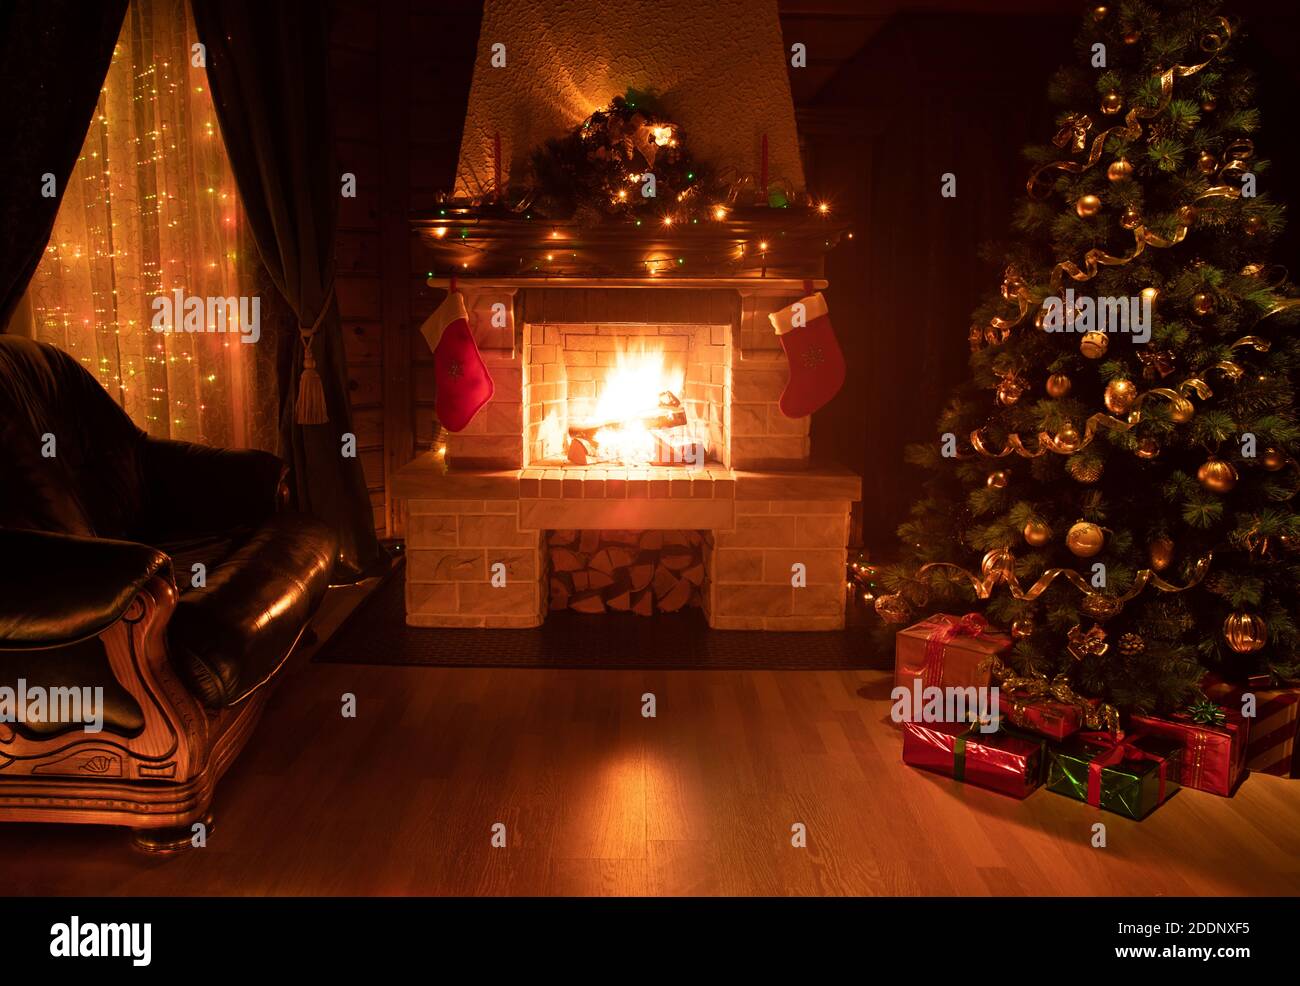 Arbre décoré de Noël dans un intérieur sombre avec cheminée, fauteuil et fenêtre Banque D'Images